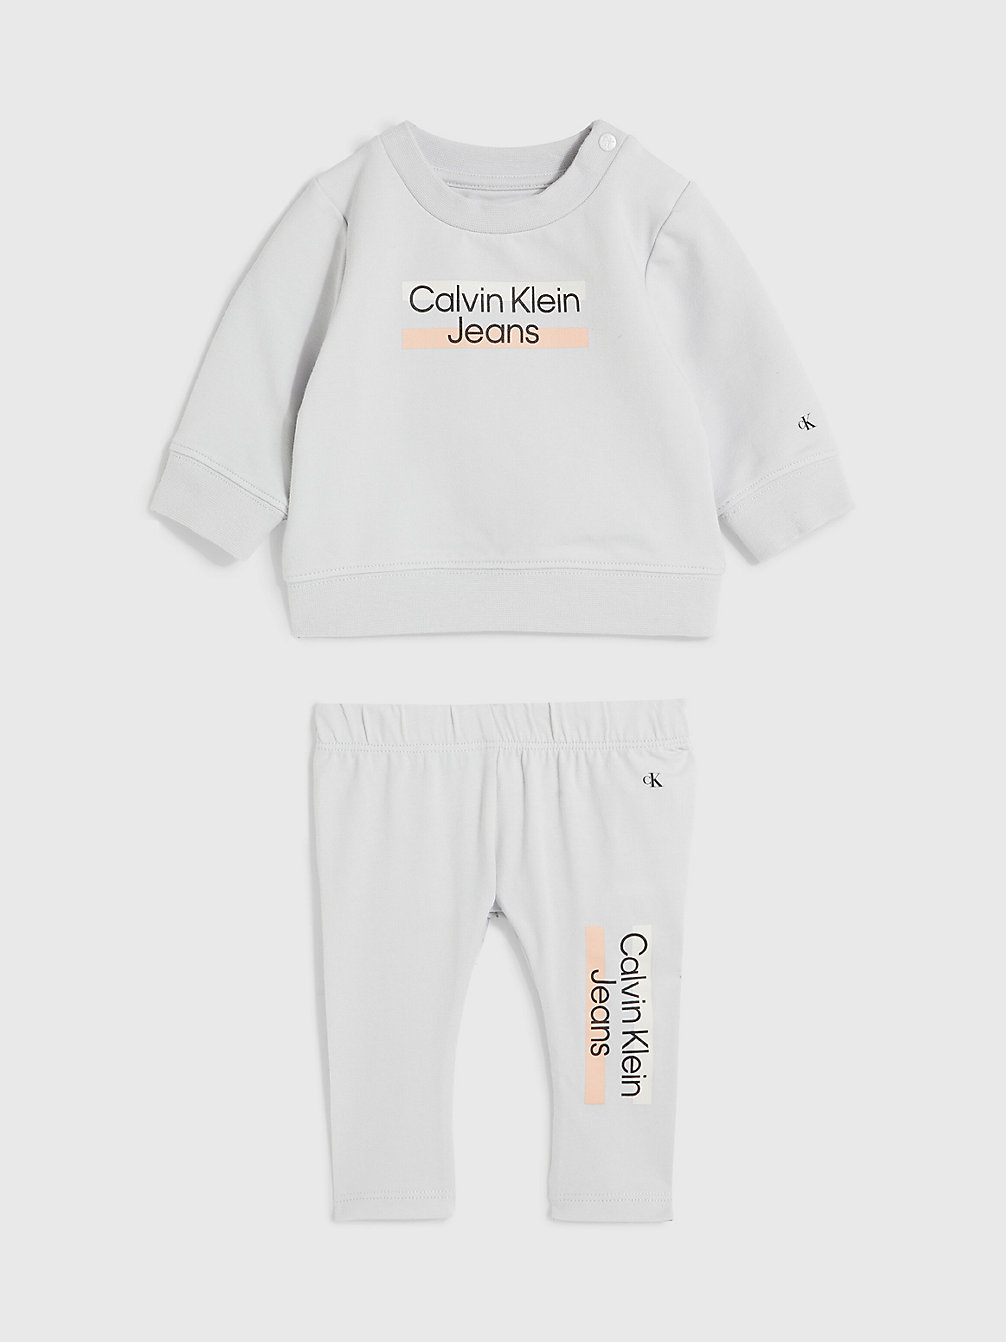 GHOST GREY Logo-Trainingsanzug Für Babys undefined newborn Calvin Klein